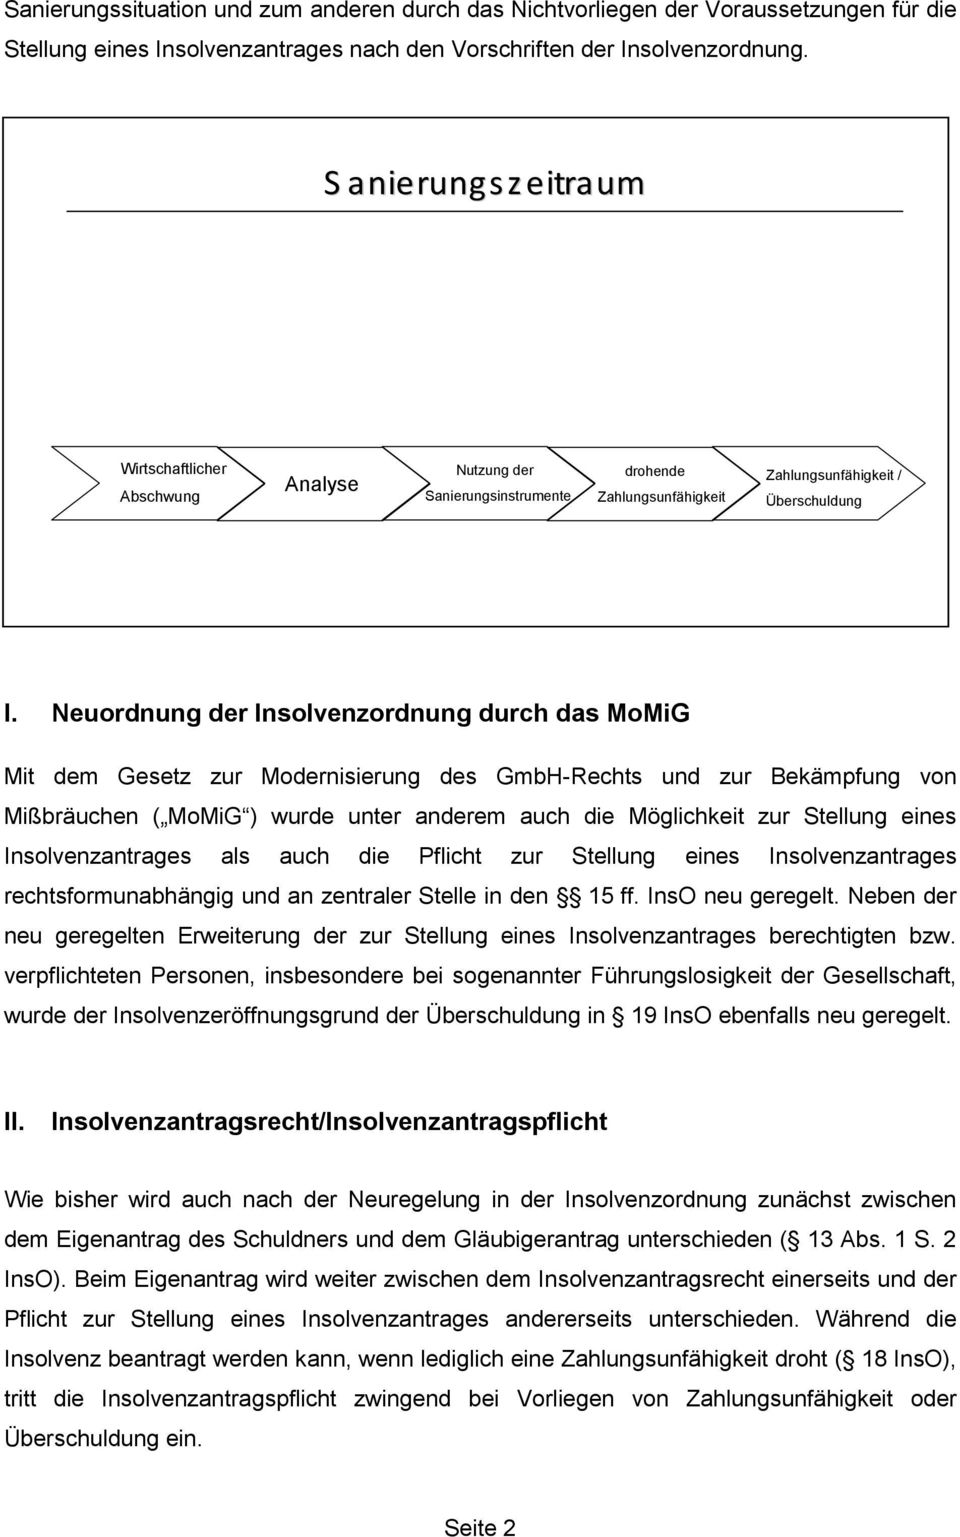 Neuordnung der Insolvenzordnung durch das MoMiG Mit dem Gesetz zur Modernisierung des GmbH-Rechts und zur Bekämpfung von Mißbräuchen ( MoMiG ) wurde unter anderem auch die Möglichkeit zur Stellung